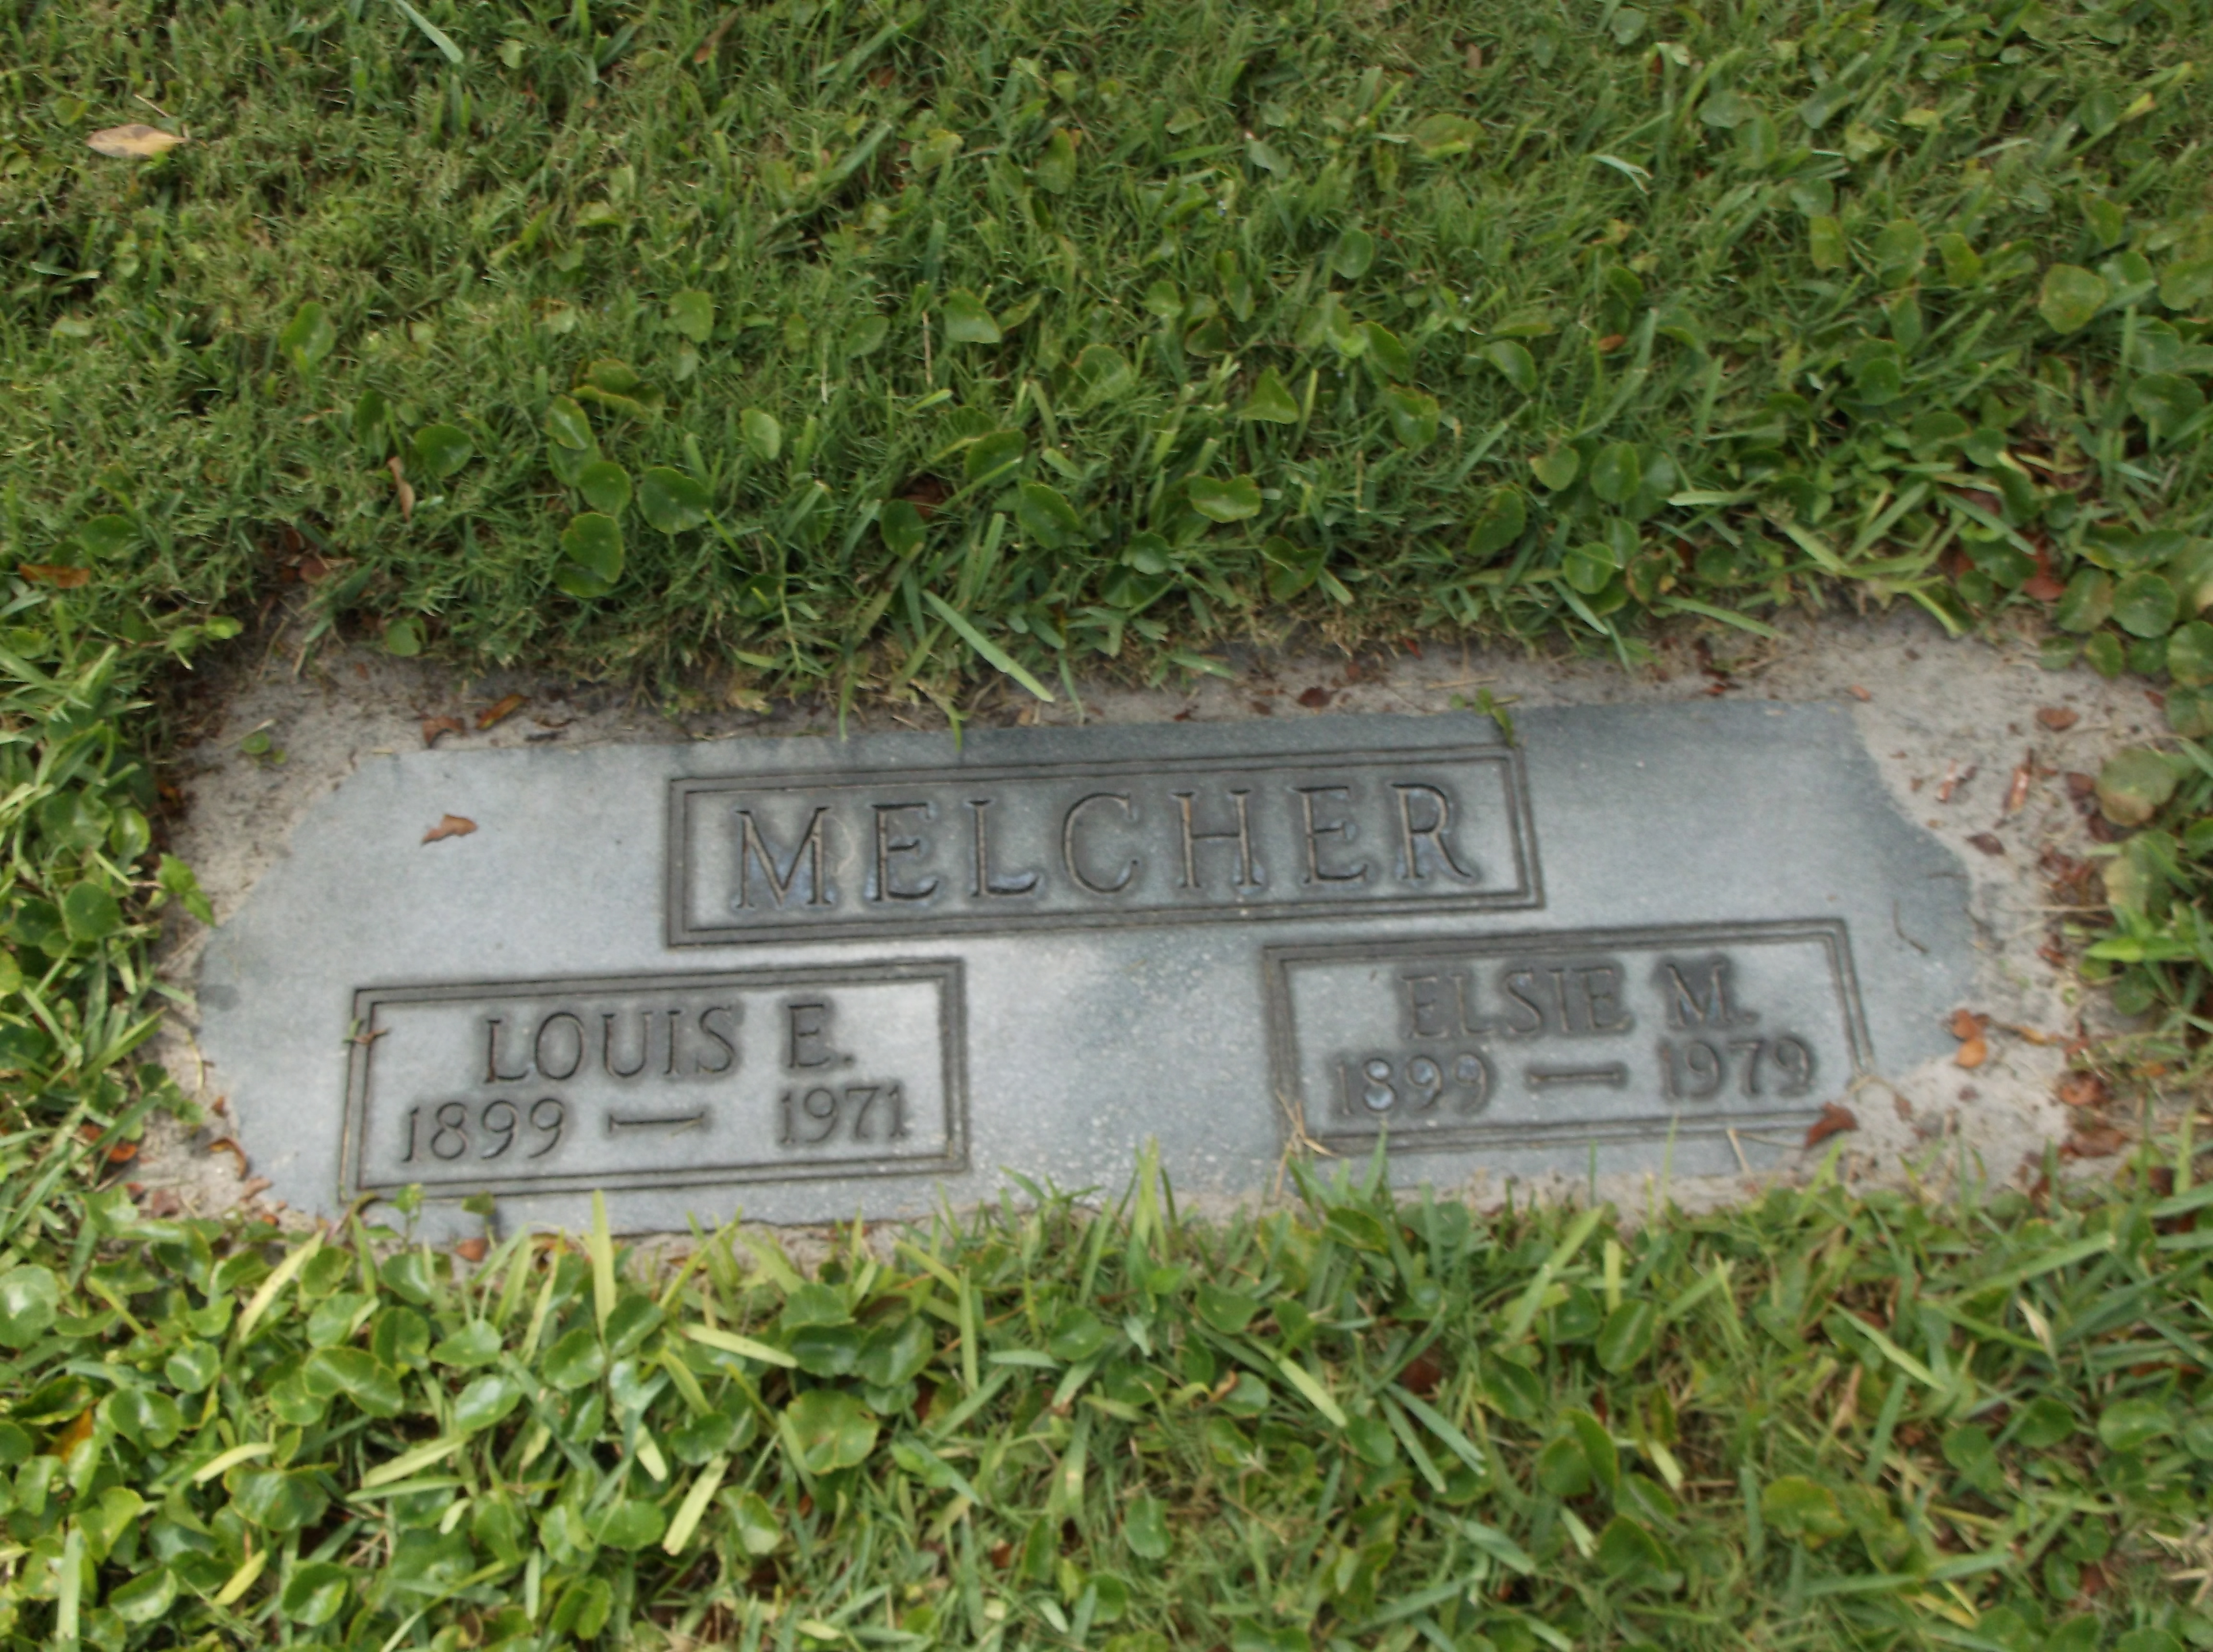 Louis E Melcher